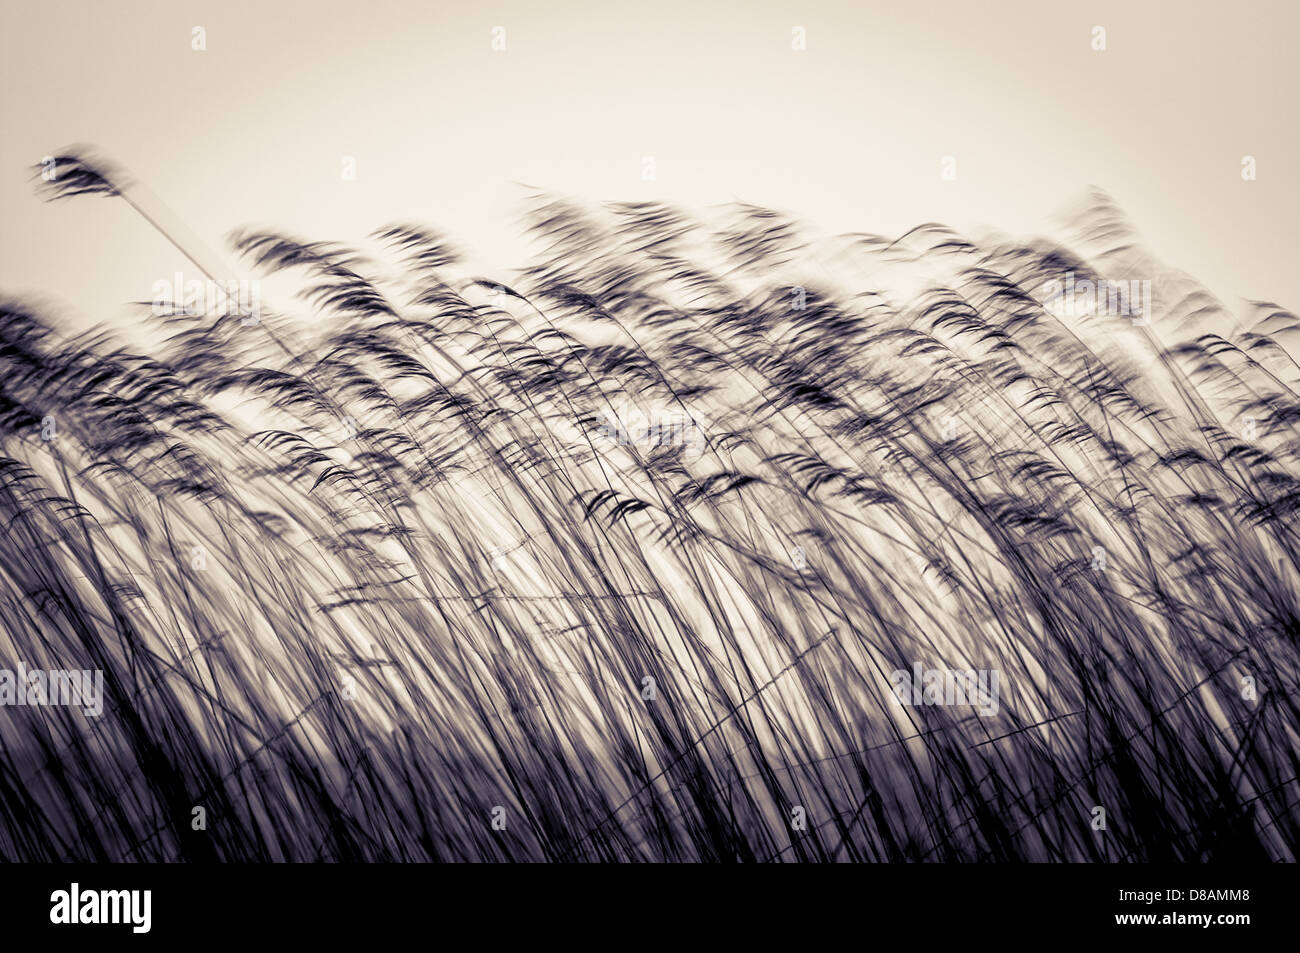 Viele schwarze Zuckerrohr Stiele in Bewegung, abends oder in der Dämmerung. Dunkle Reed bewegen Fallwind auf hellen Himmelshintergrund in Sepia. Dämmerung Stockfoto